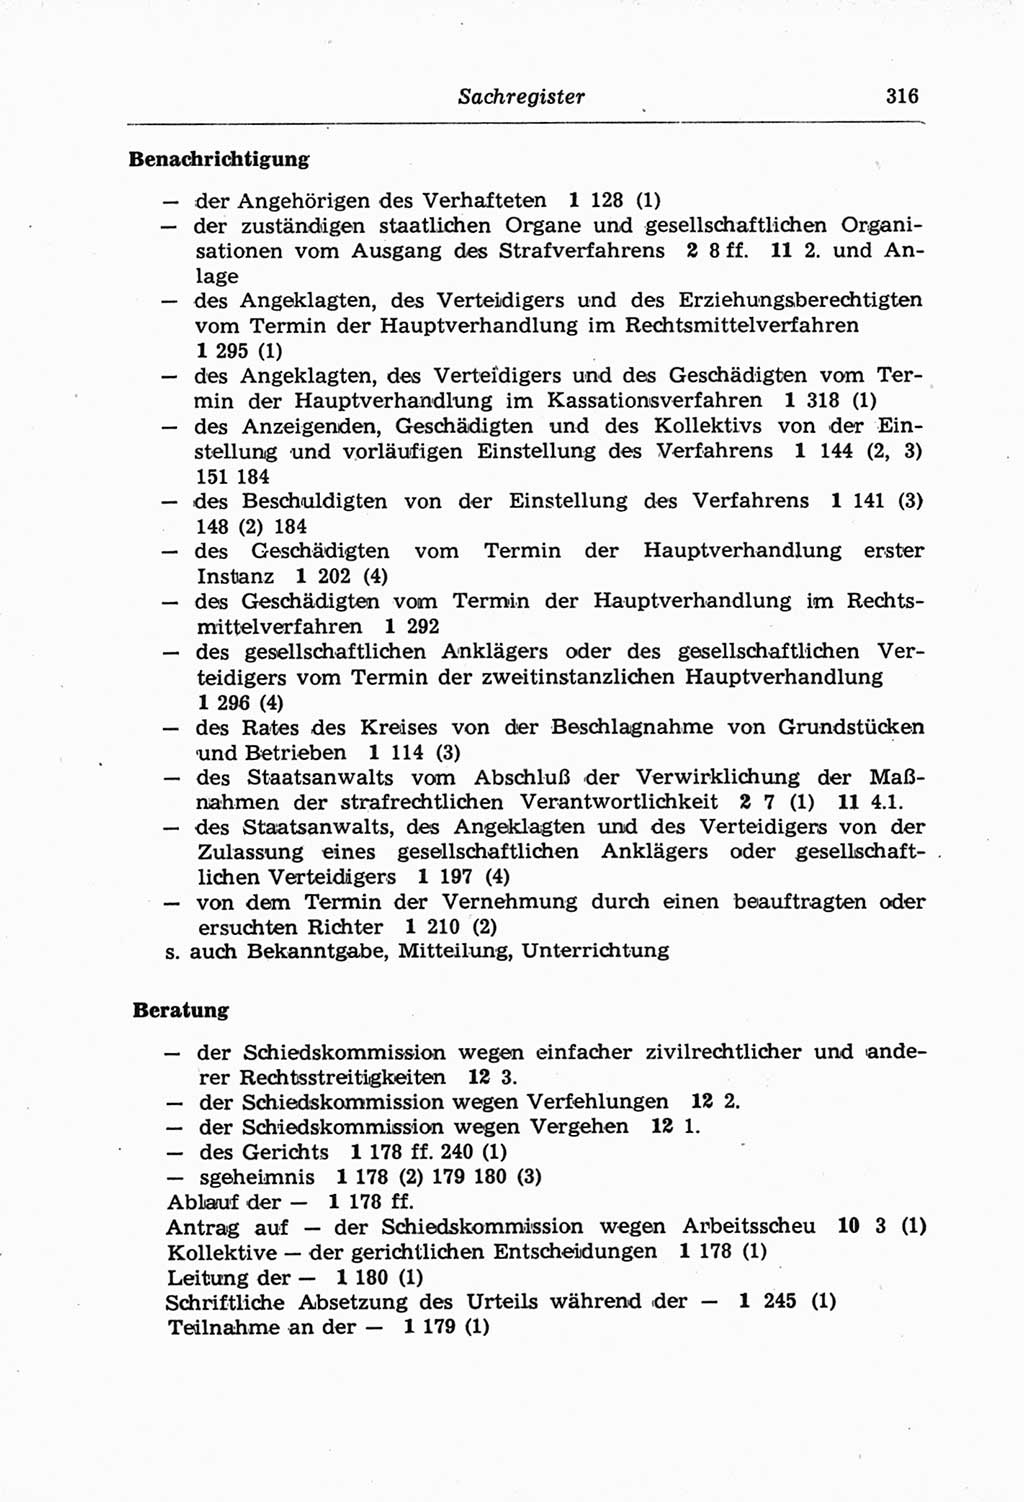 Strafprozeßordnung (StPO) der Deutschen Demokratischen Republik (DDR) und angrenzende Gesetze und Bestimmungen 1968, Seite 316 (StPO Ges. Bstgn. DDR 1968, S. 316)